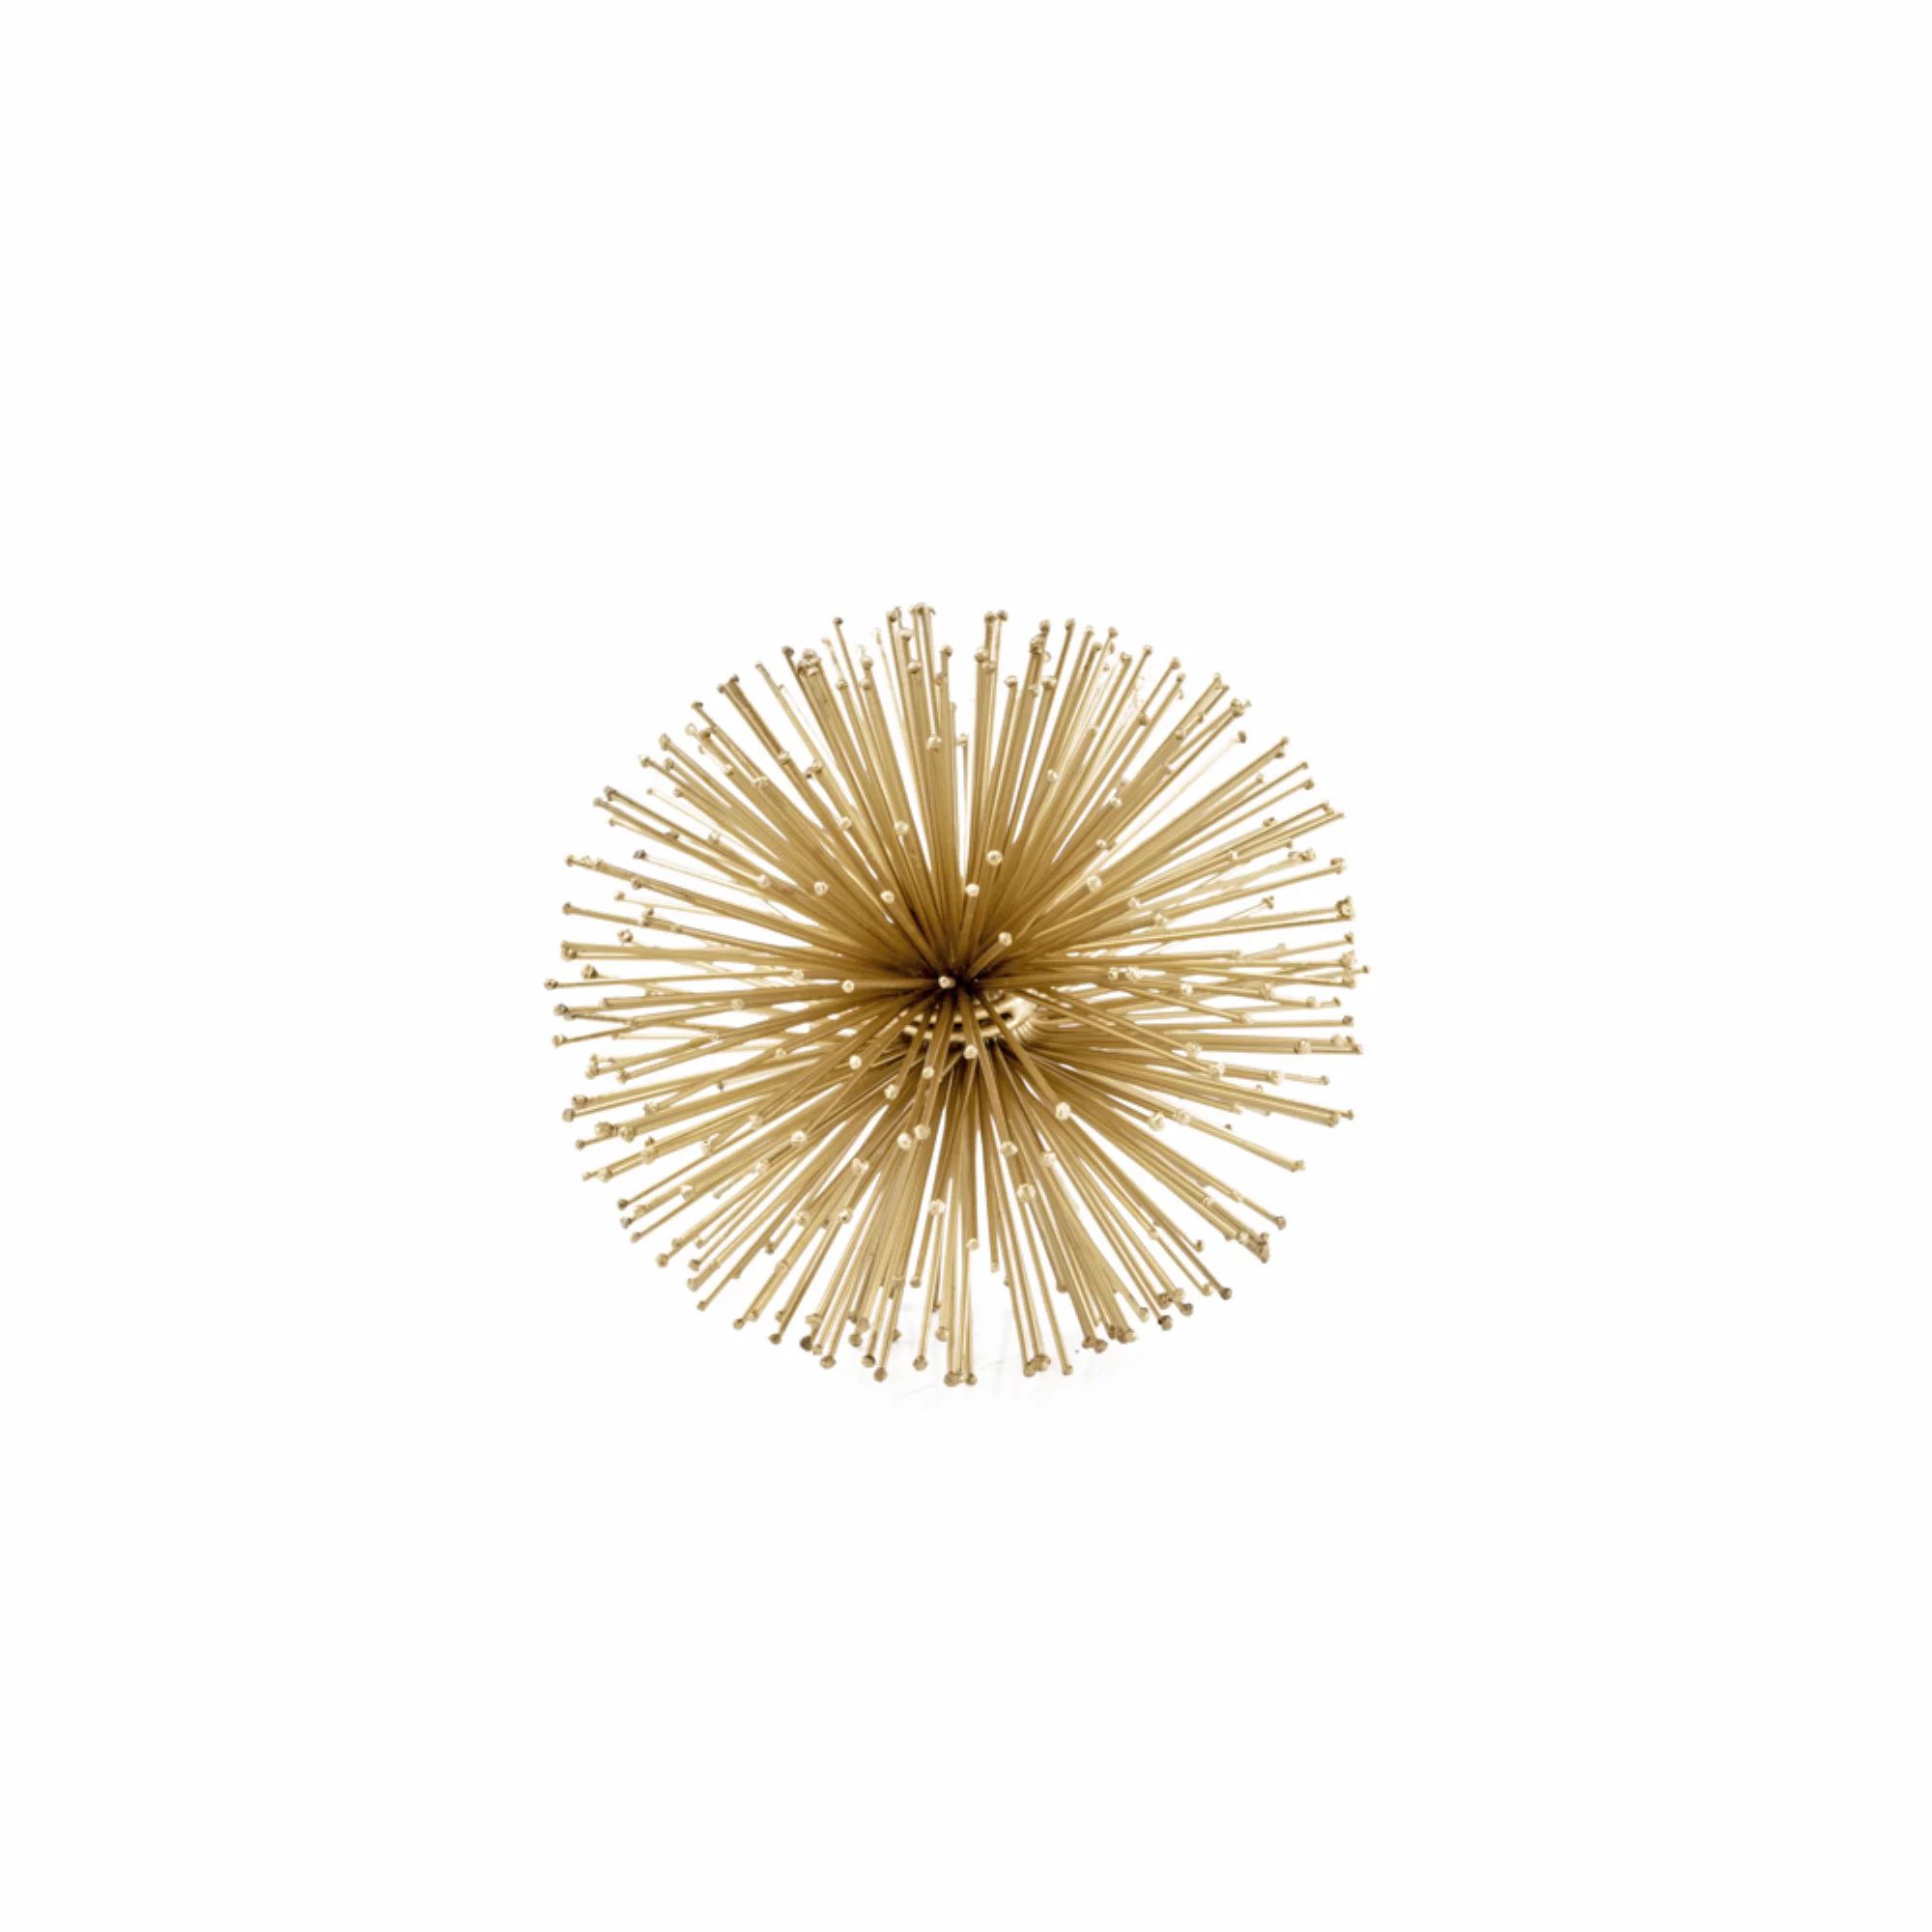 6" X 6" X 6" Gold Iron Urchin Small Sphere | Walmart (US)